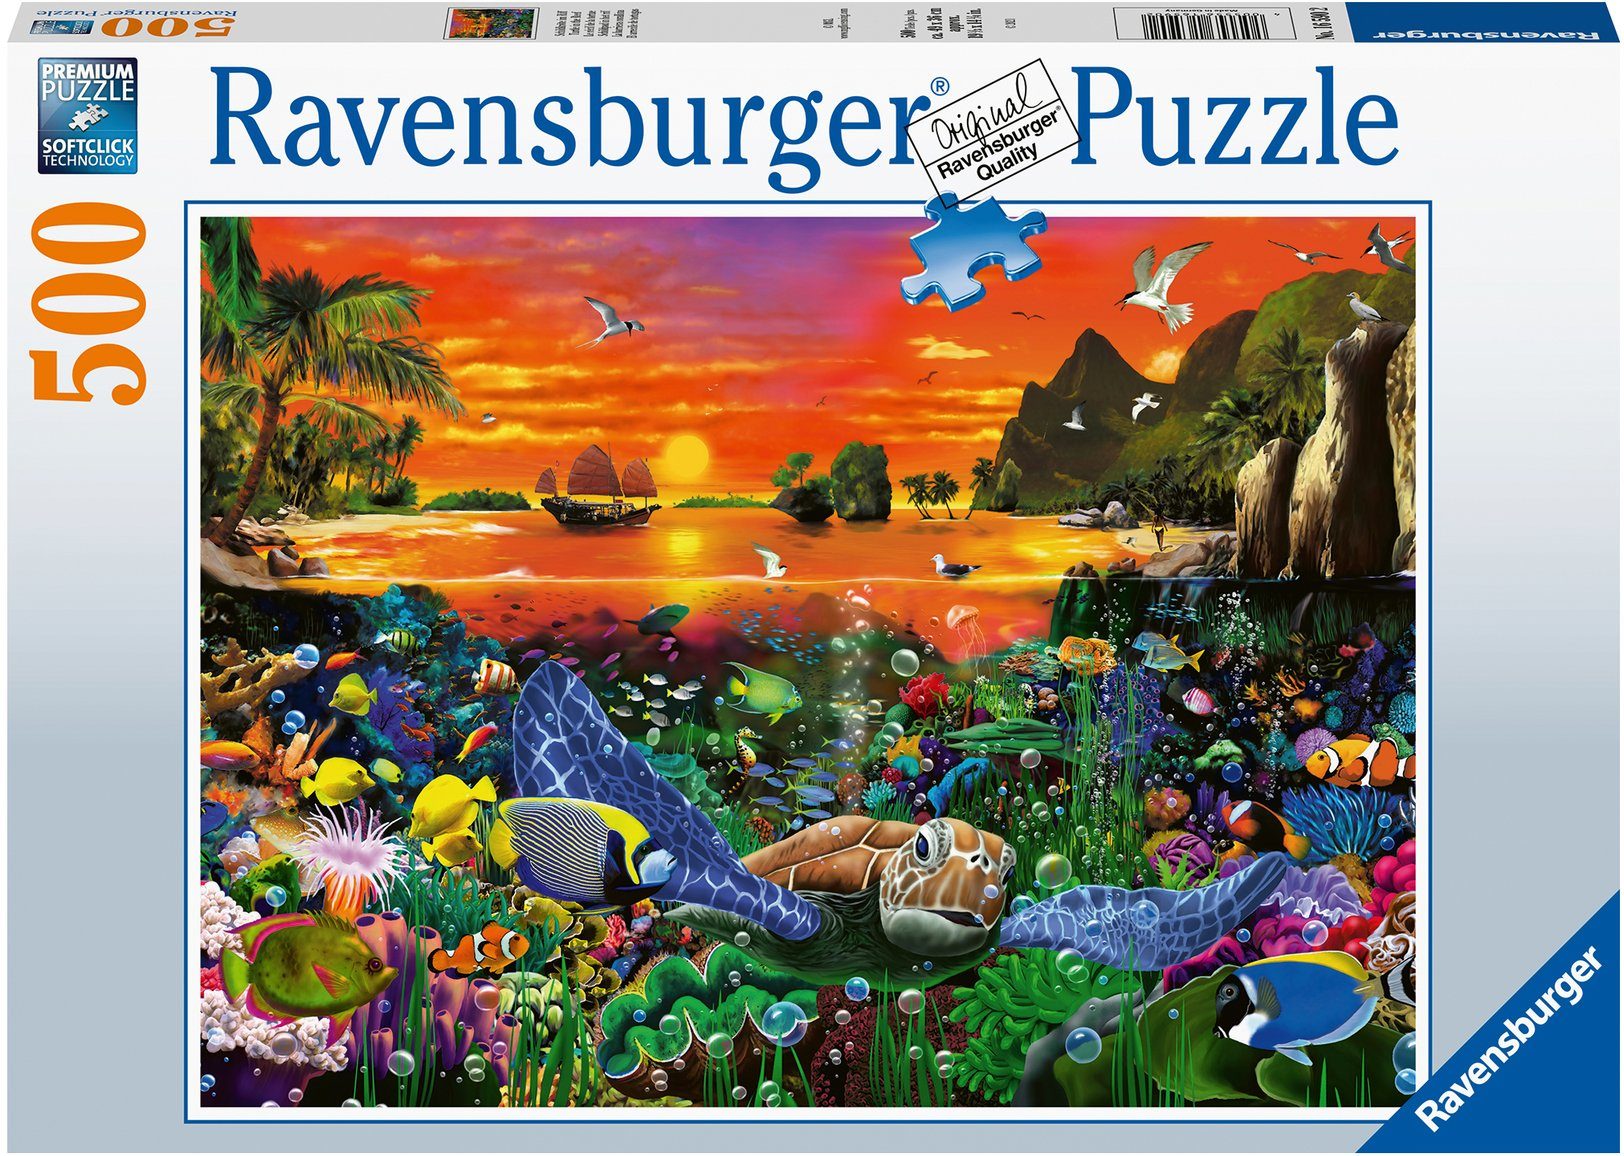 Ravensburger Puzzle Schildkröte im Puzzleteile, Germany, Wald Riff, Made in FSC® schützt - - weltweit 500